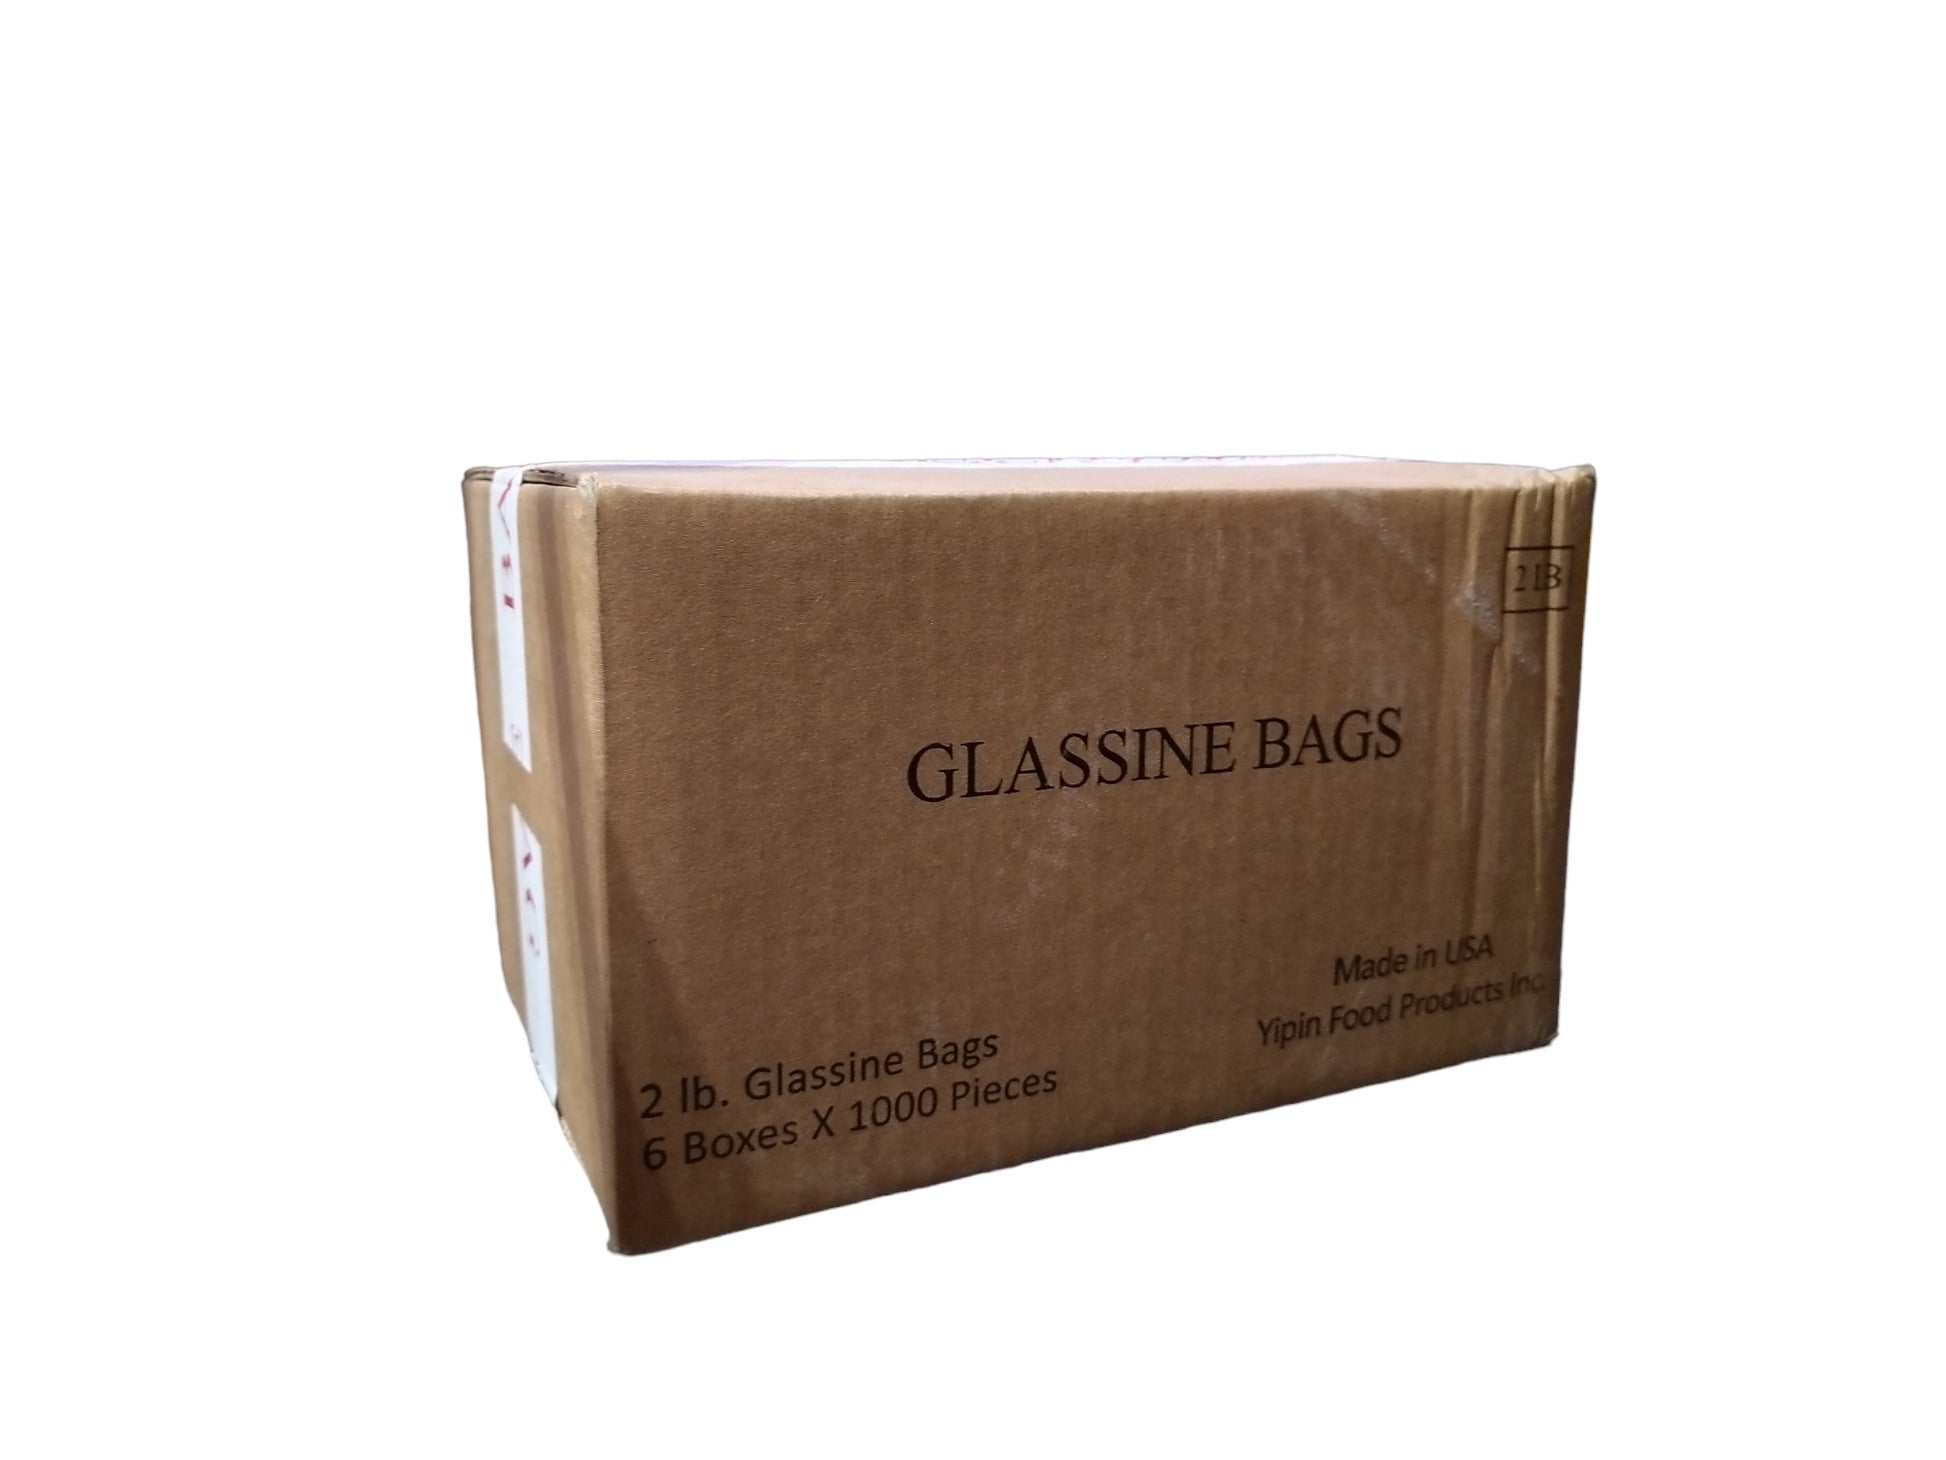 Storage Box for # 7 Glassine Envelopes